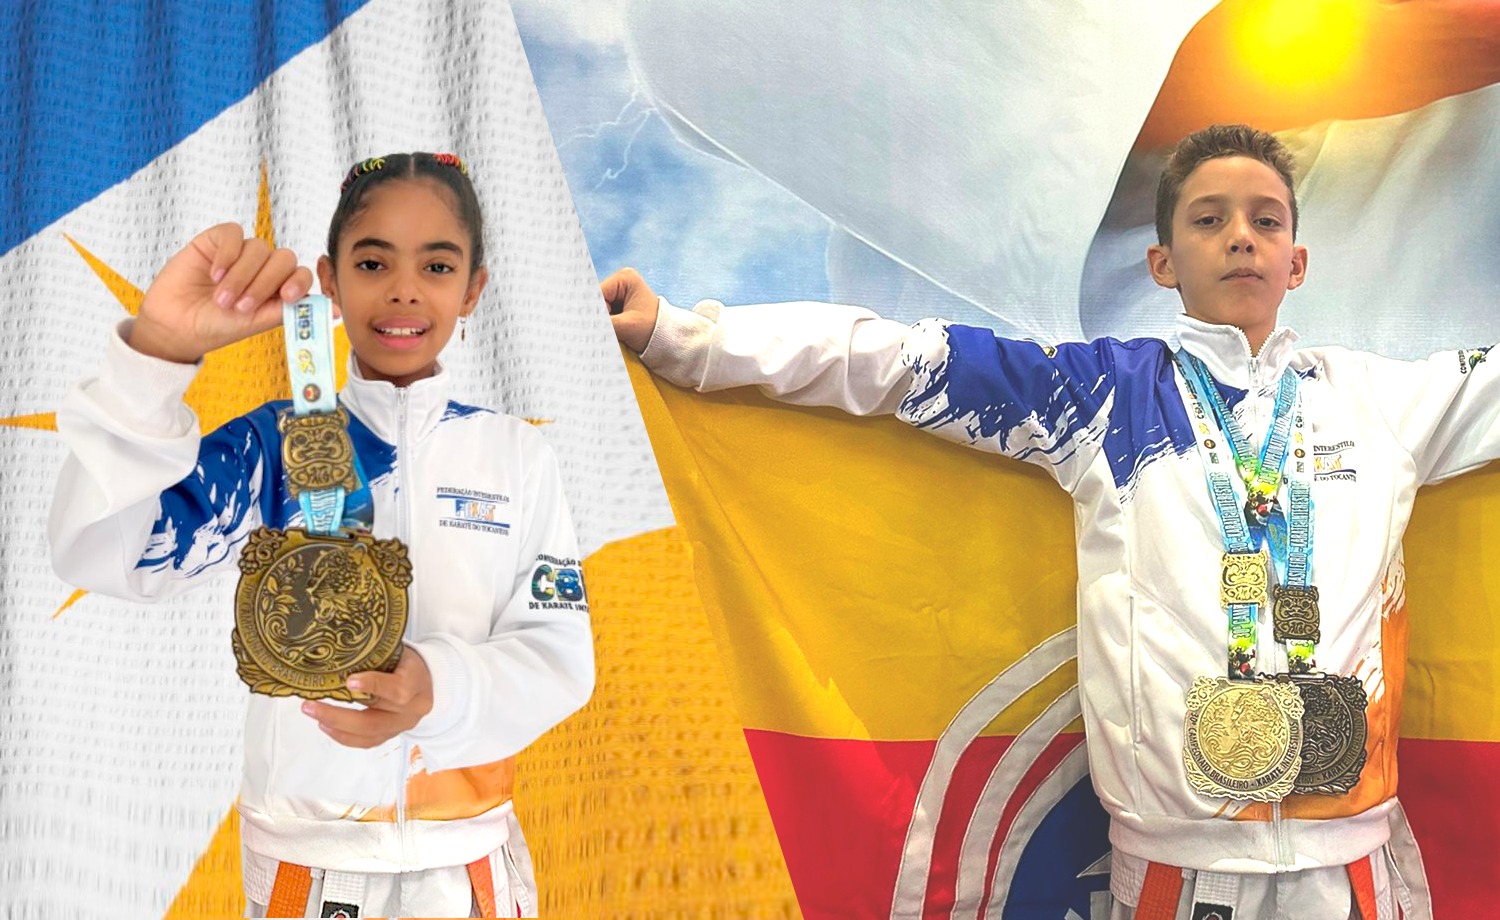 Alice Oliveira Brandão, de 11 anos, é aluna da rede municipal de ensino e conquistou a medalha de bronze. Yôsseph Morais de Aquino, tem nove anos, e uma história de superação que permitiu a conquista de um ouro e um bronze